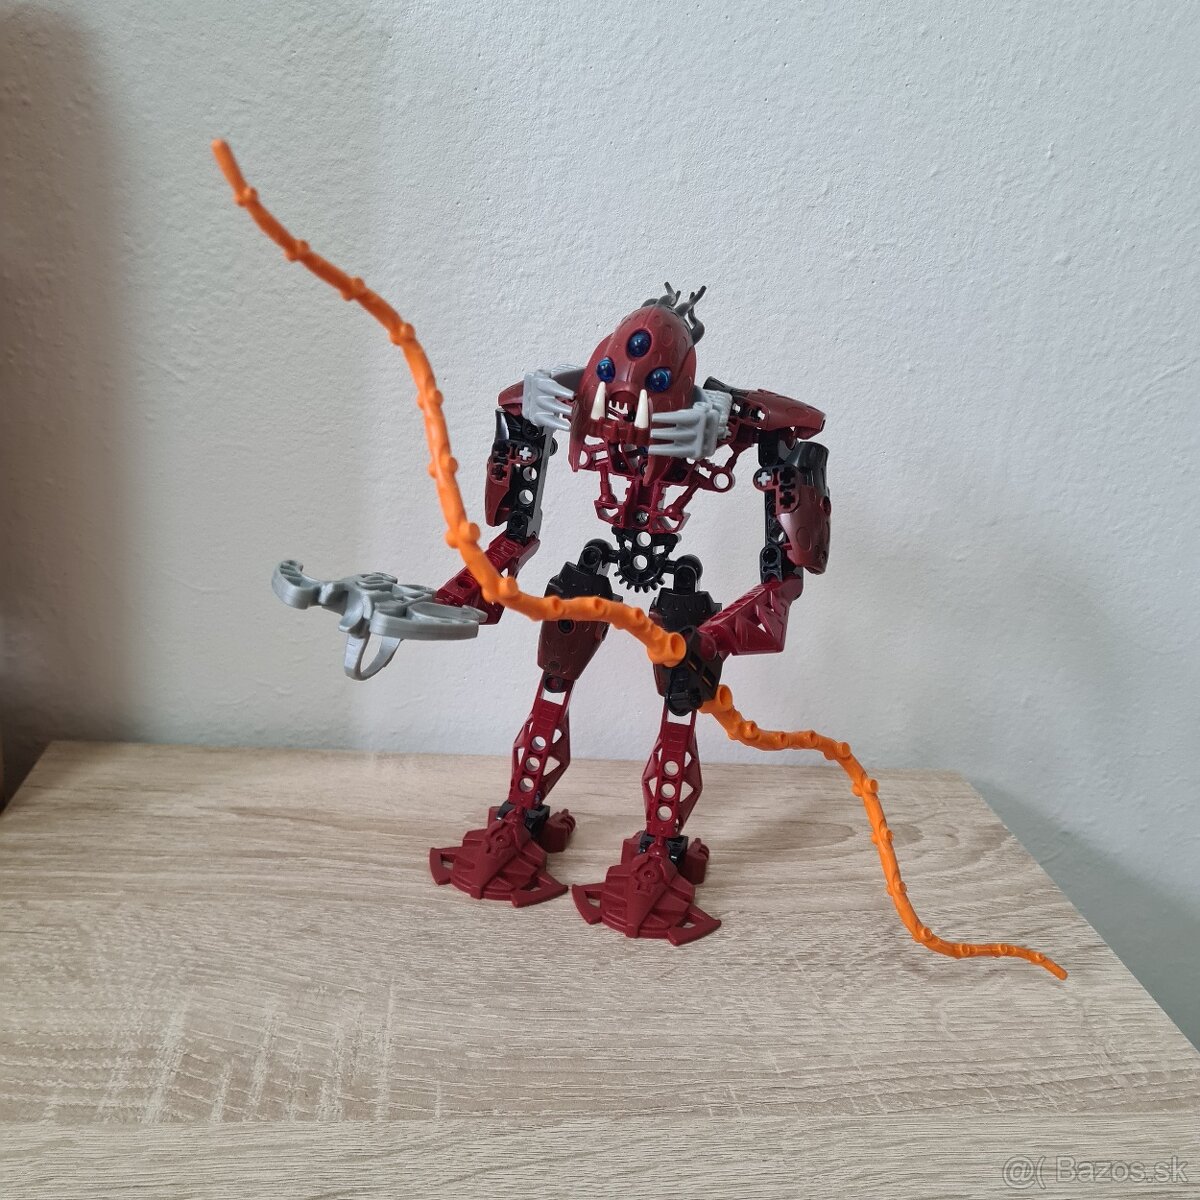 Lego 8917 Bionicle Barraki Kalmah